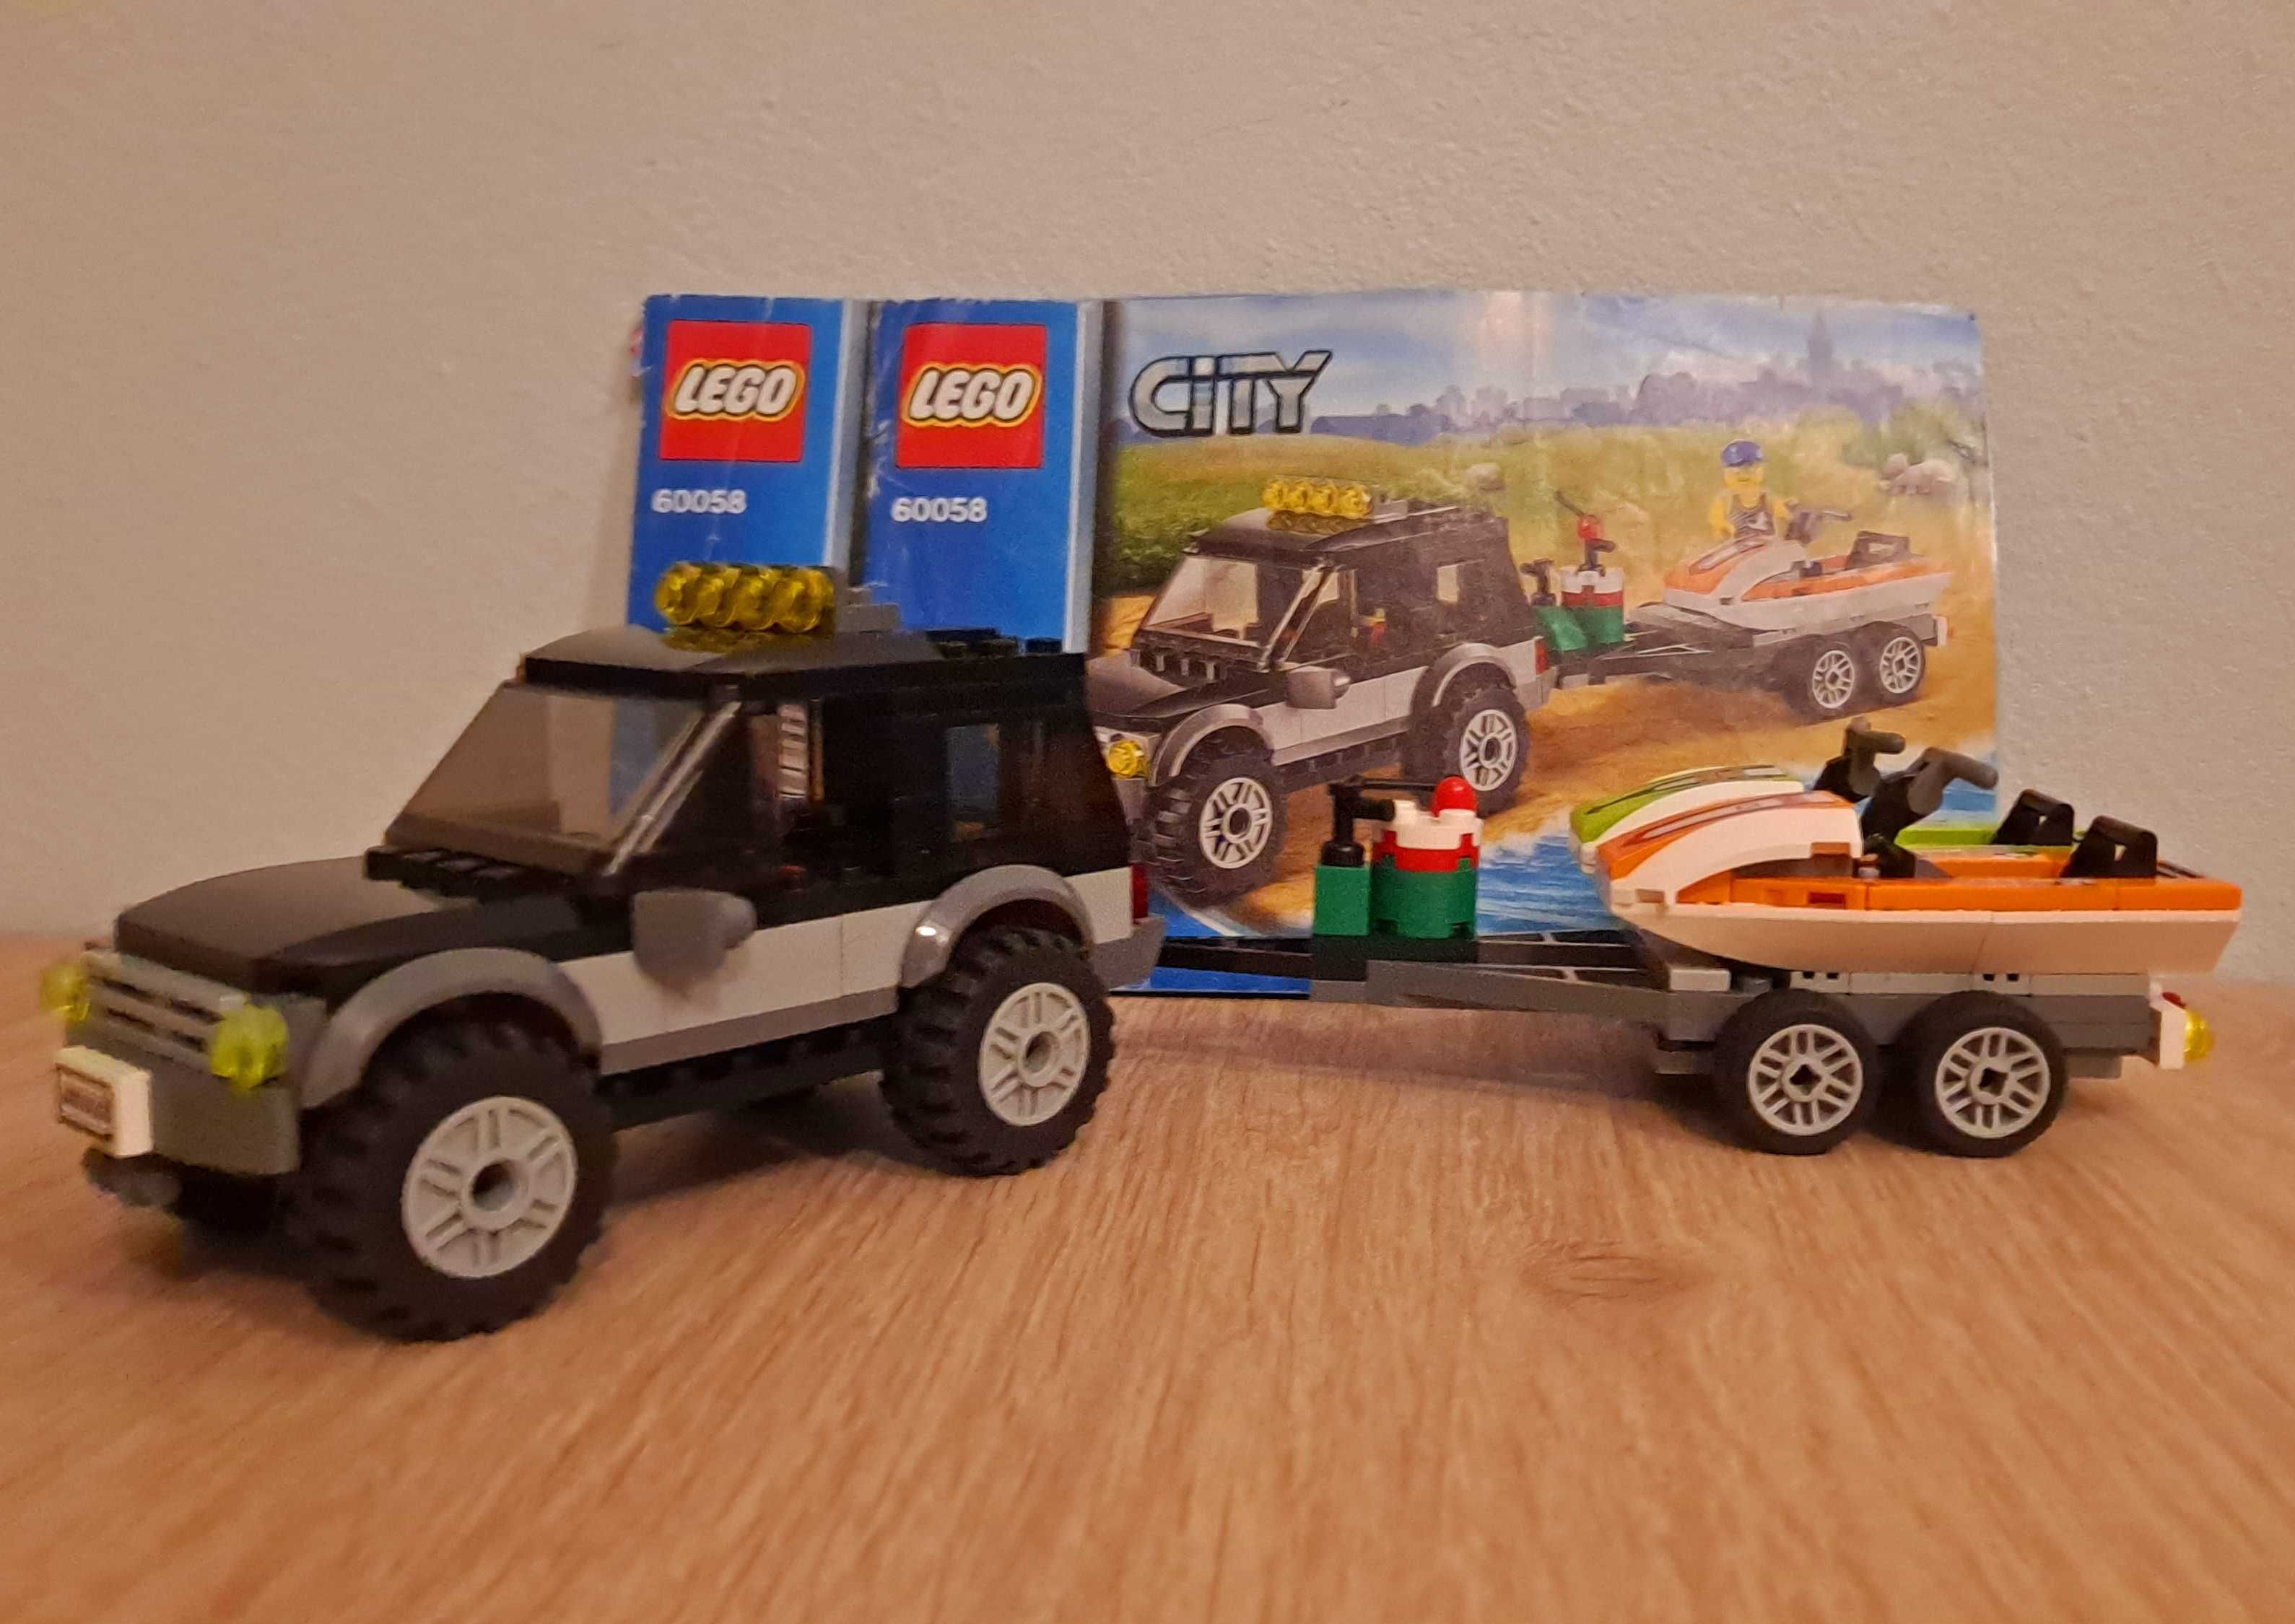 Lego City  60058